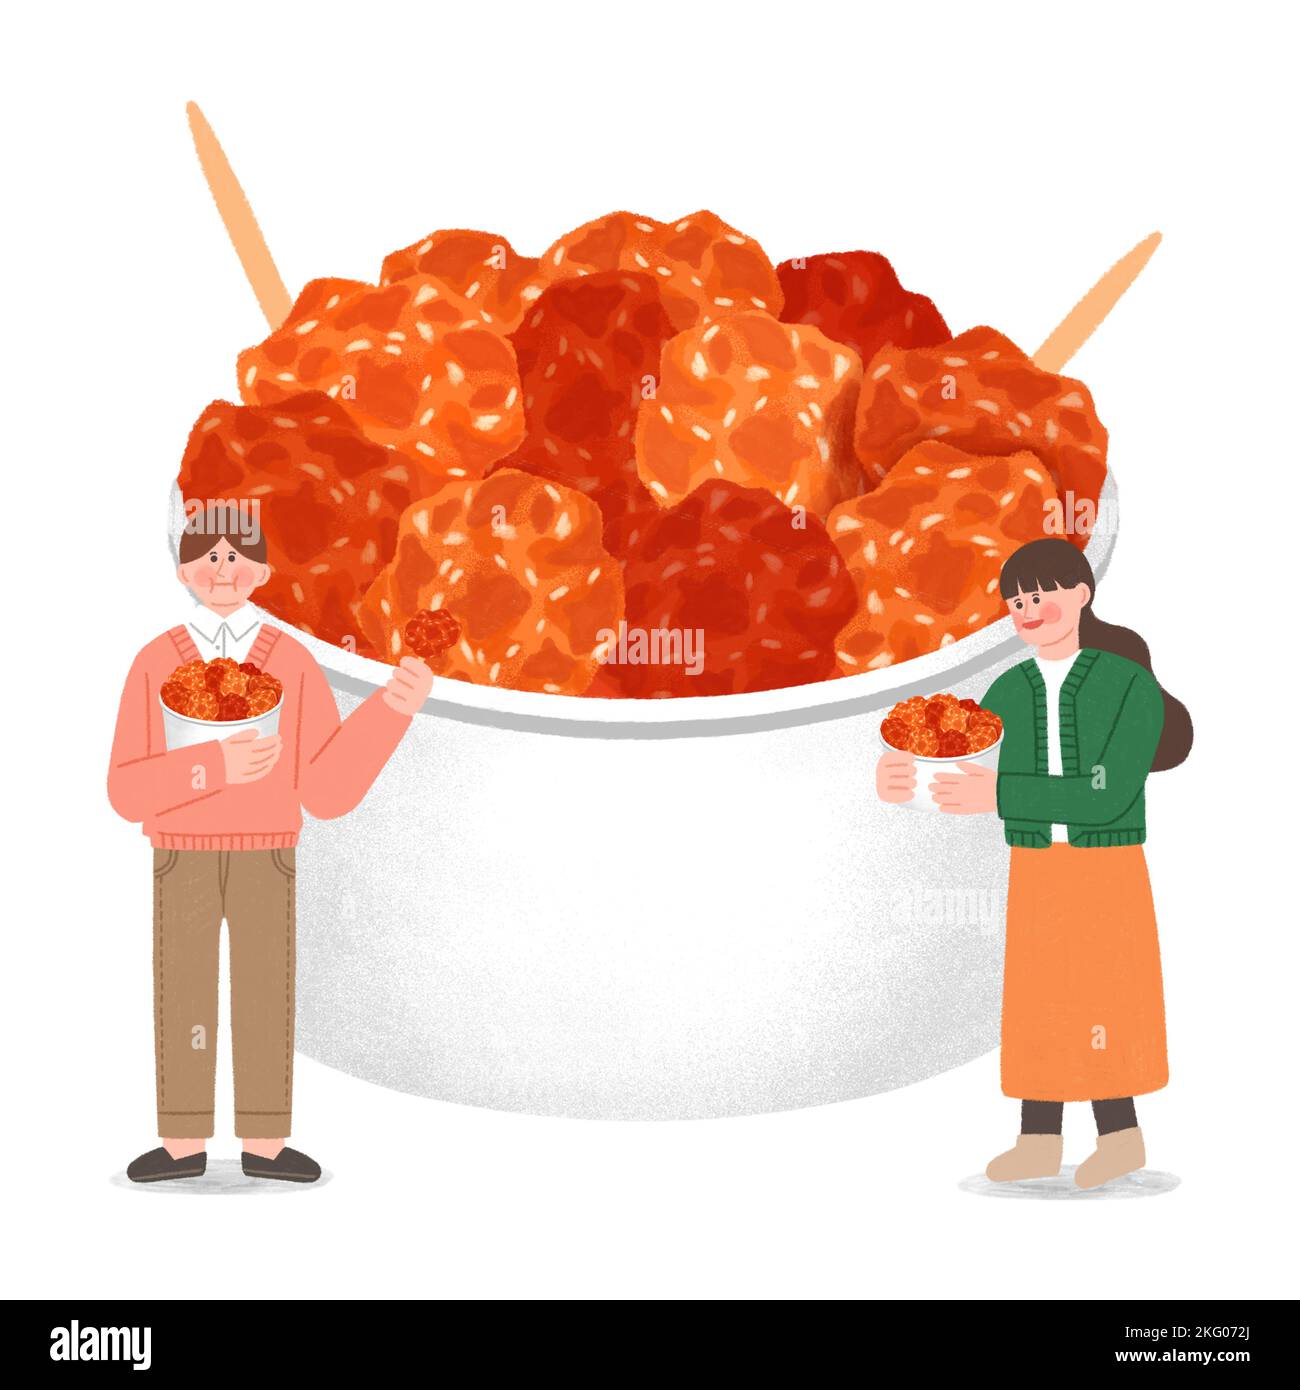 ilustración de comida callejera de invierno coreana: pollo agridulce y agrio Foto de stock